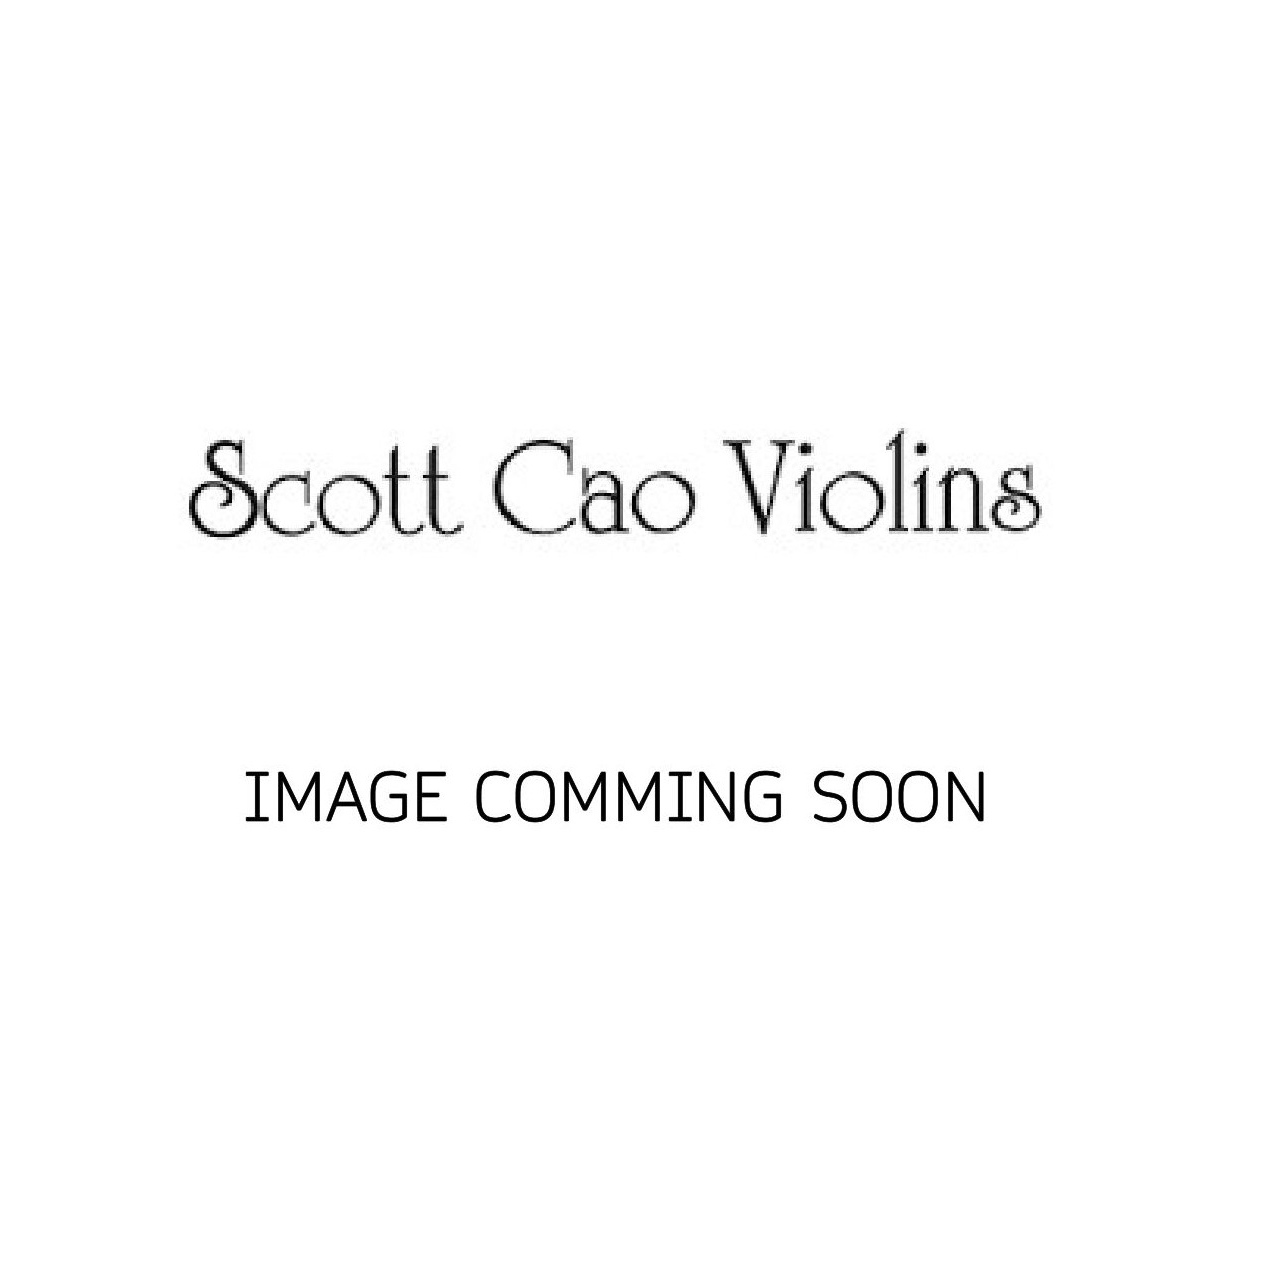 Scott Cao Viola 38,0 EU/EU